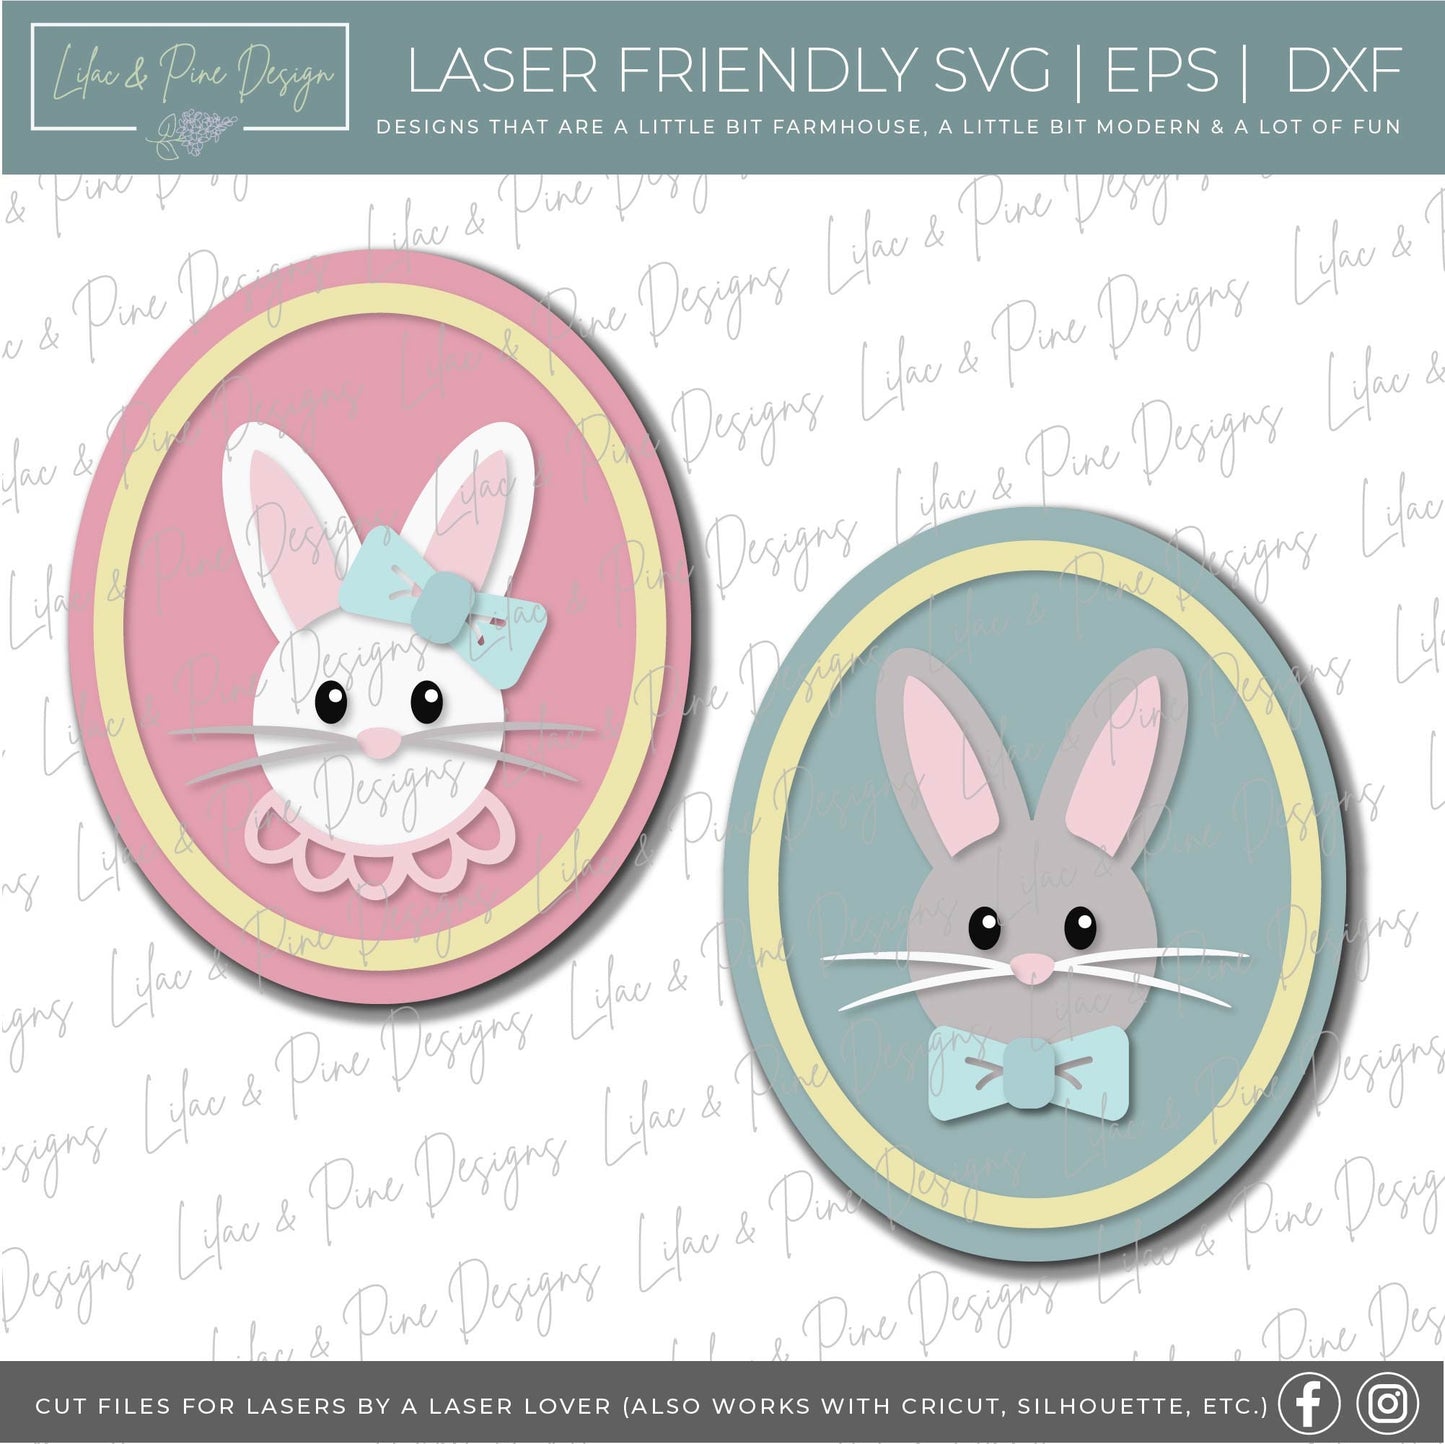 Easter bunny oval sign bundle, boy girl bunny SVG, Easter Sign kit, DIY kids kit, Easter basket gift, Glowforge svg files, laser cut file